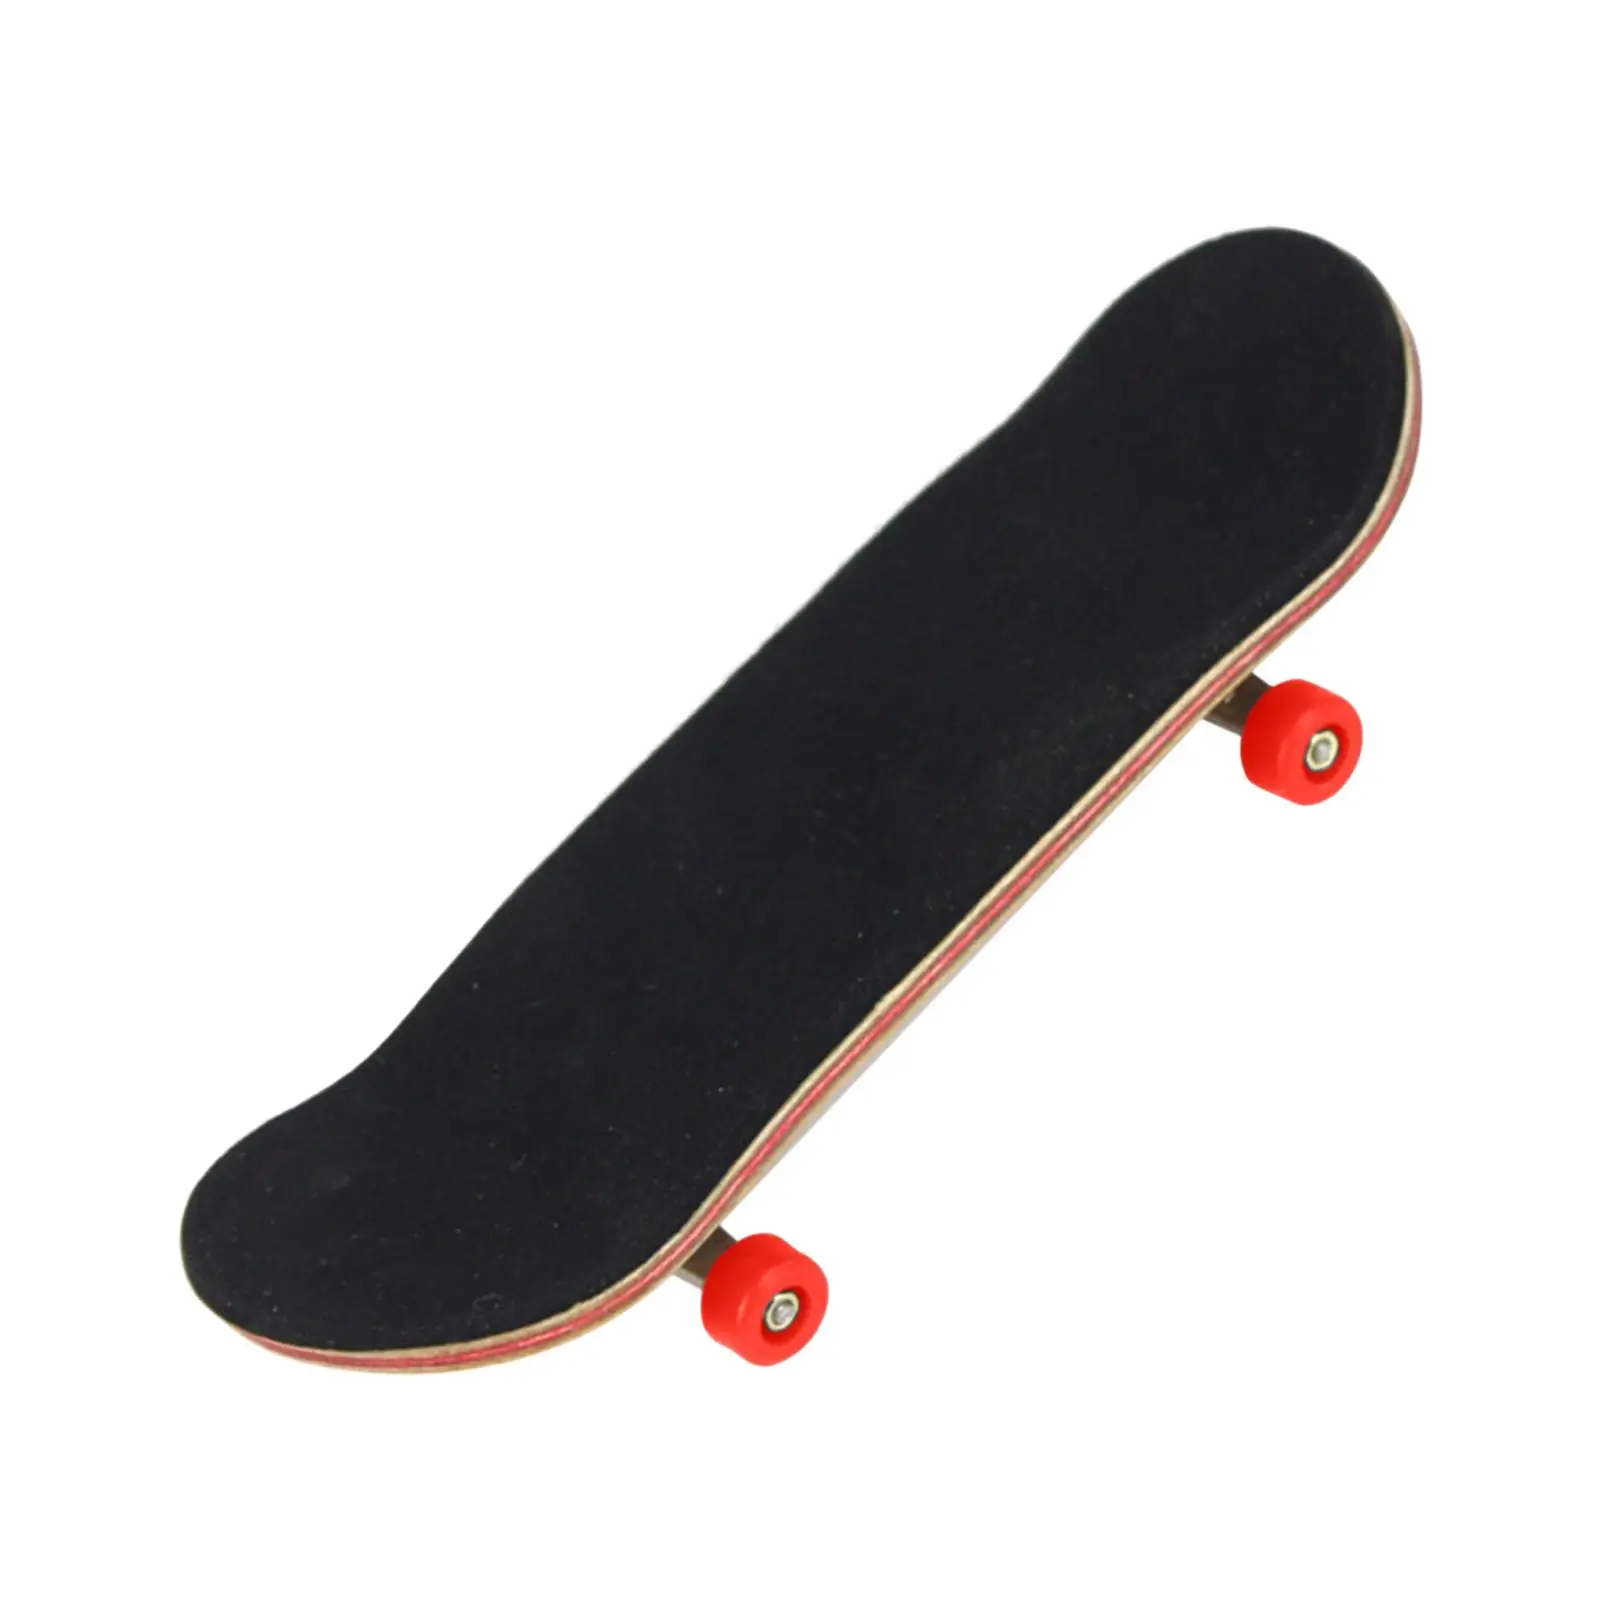 Finger Skateboard Kit - Pad Fingerboard for Kids Children Boy